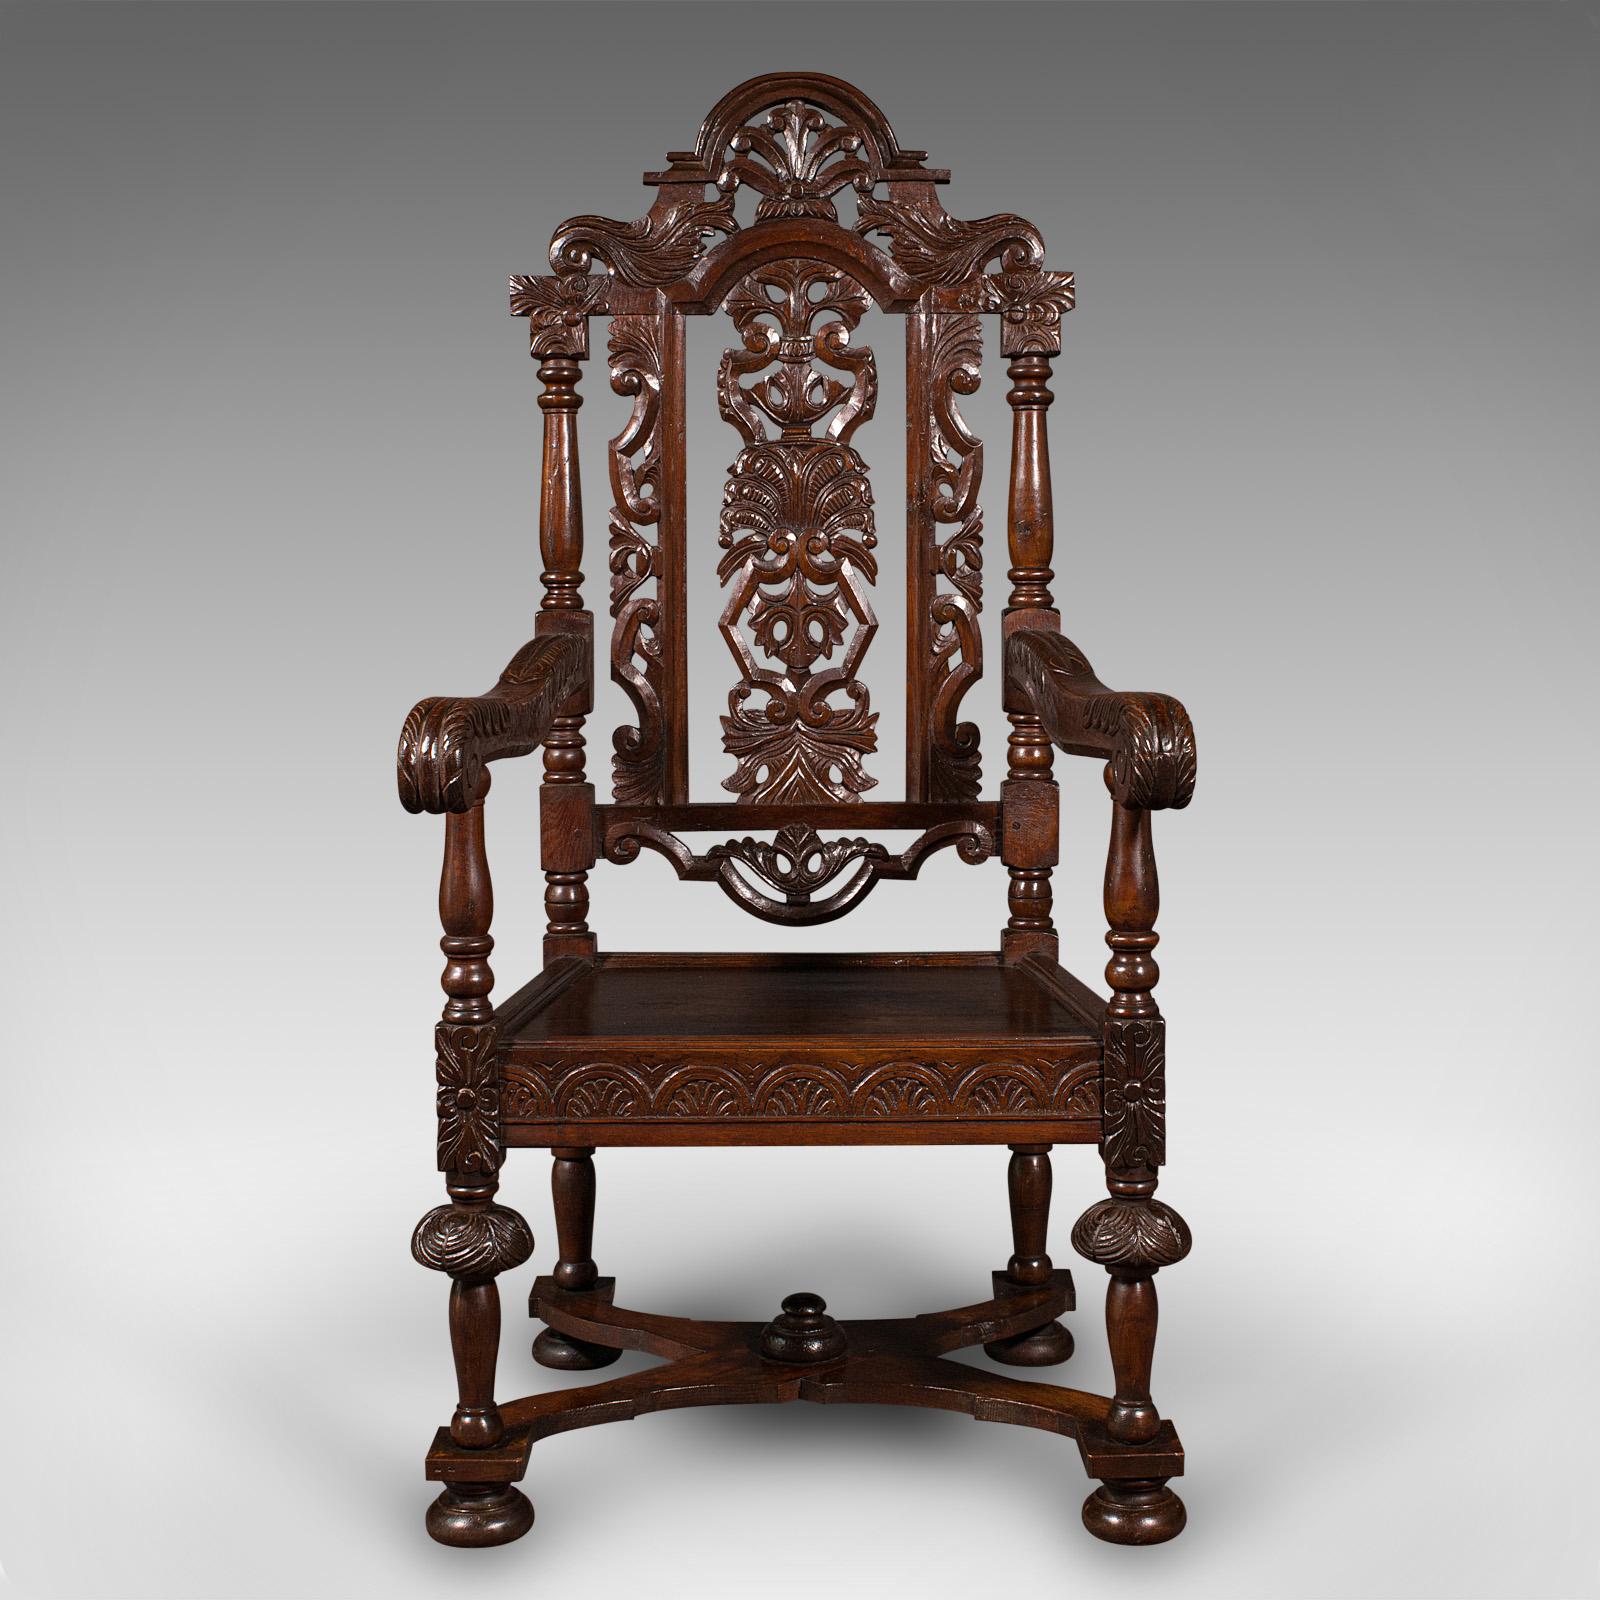 Il s'agit d'une ancienne chaise trône sculptée. Chaise coudée écossaise en chêne sculpté, de style néo-gothique, datant de l'époque victorienne, vers 1890.

Chaise délicieusement sculptée, avec un motif gothique distingué sur toute sa